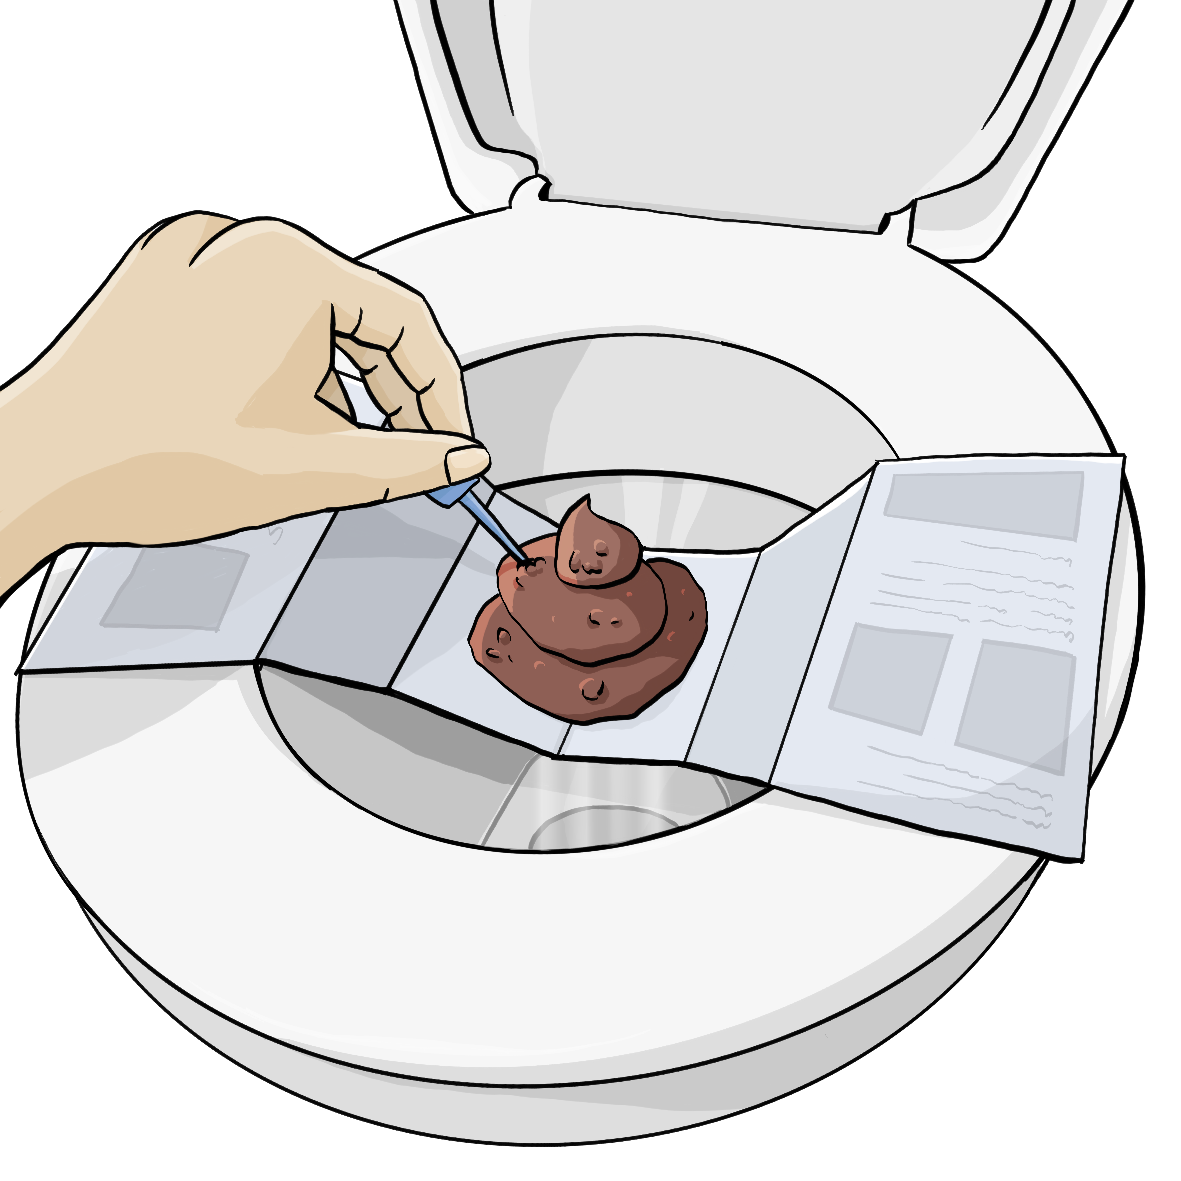 Ein Papierstreifen liegt quer über einer offenen Toilette, auf dem Streifen liegt ein Haufen Kot. Eine Hand sticht mit einem Stäbchen in den Kot.